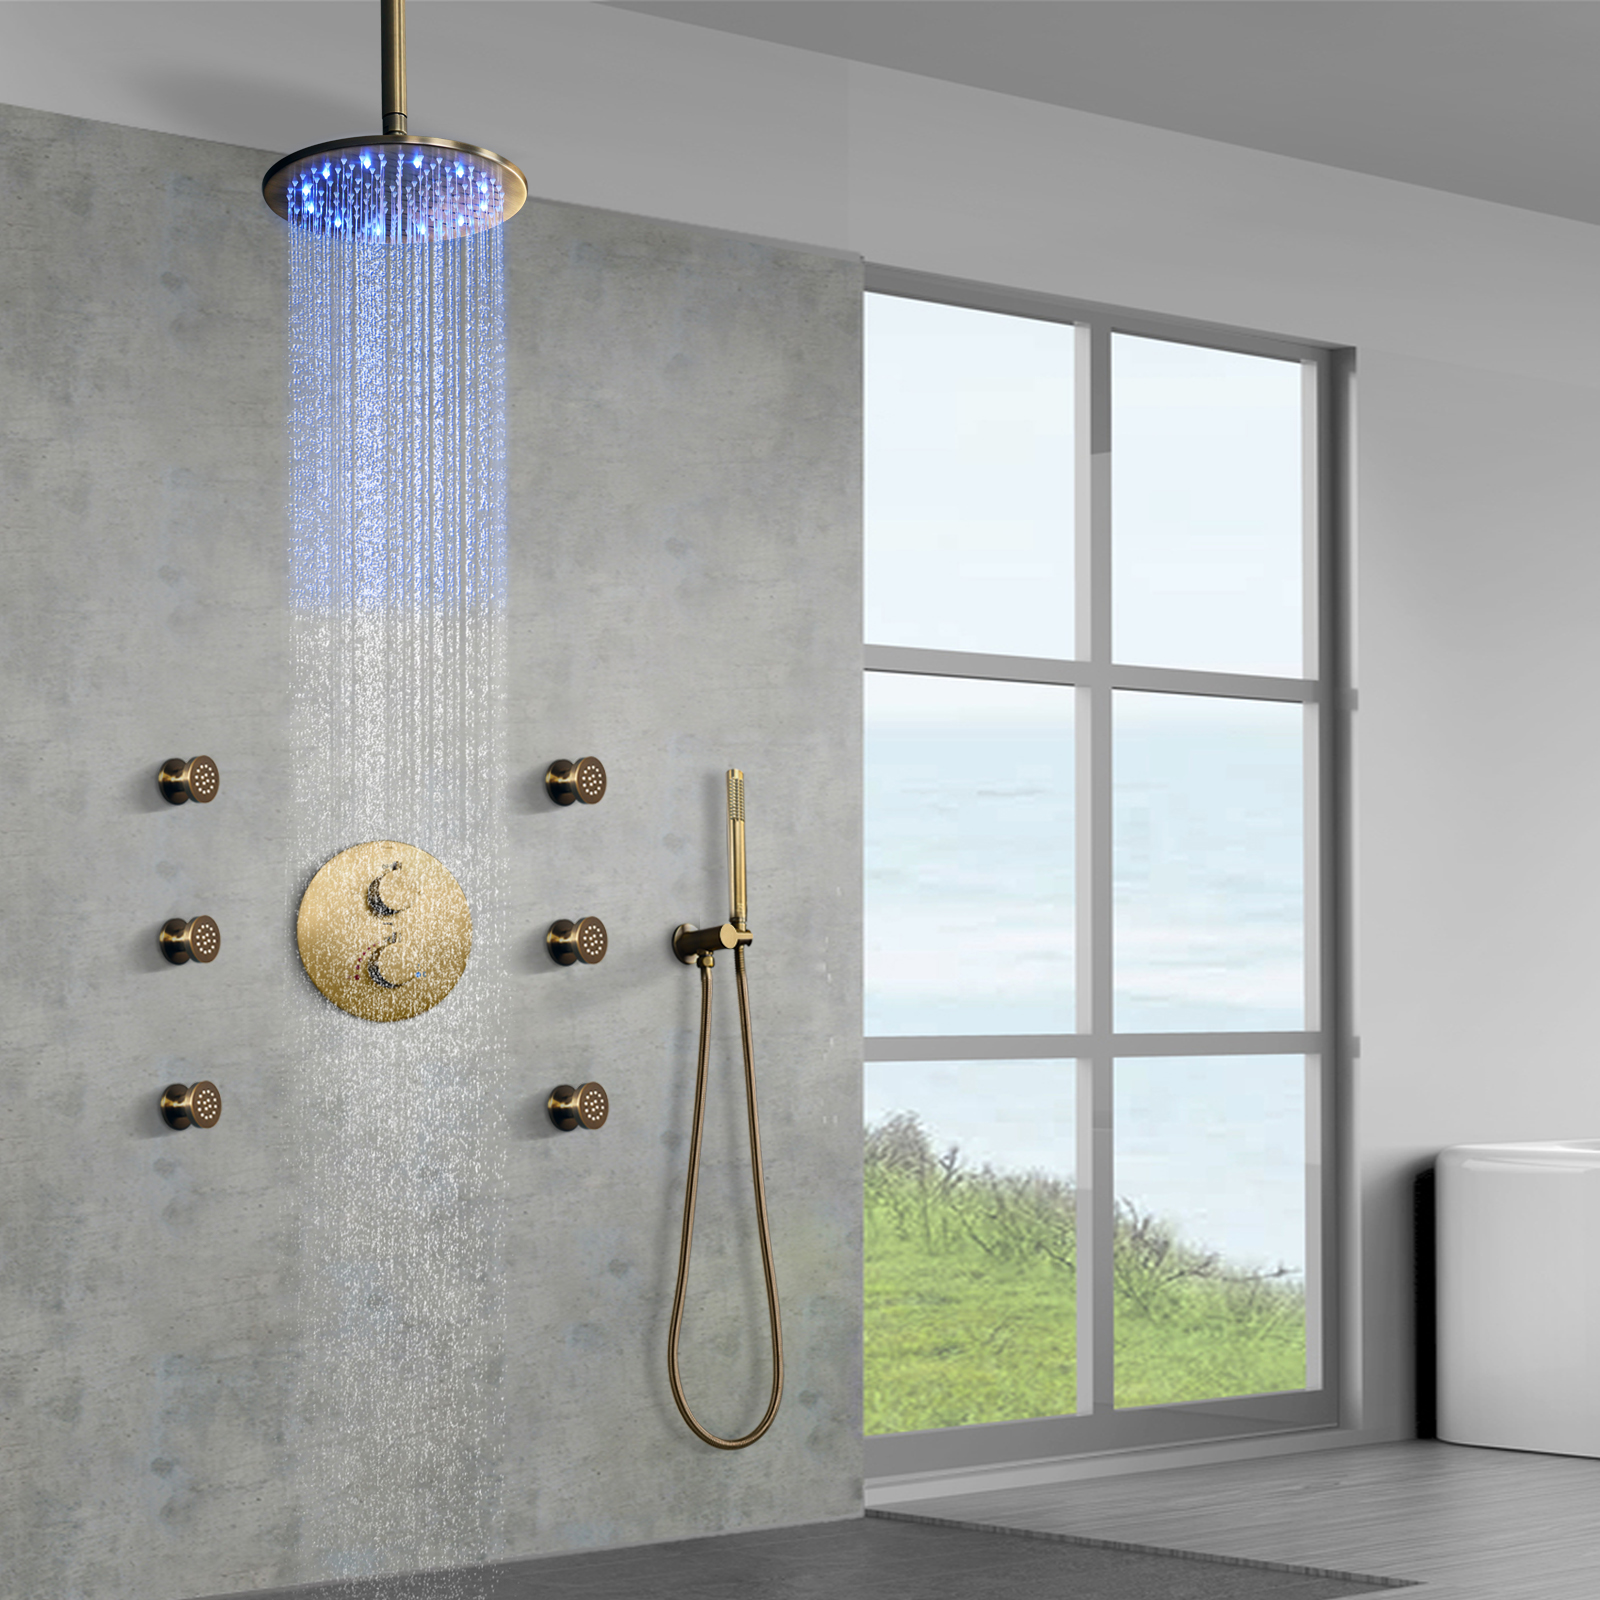 Ilumine su experiencia de ducha con cabezales de ducha LED